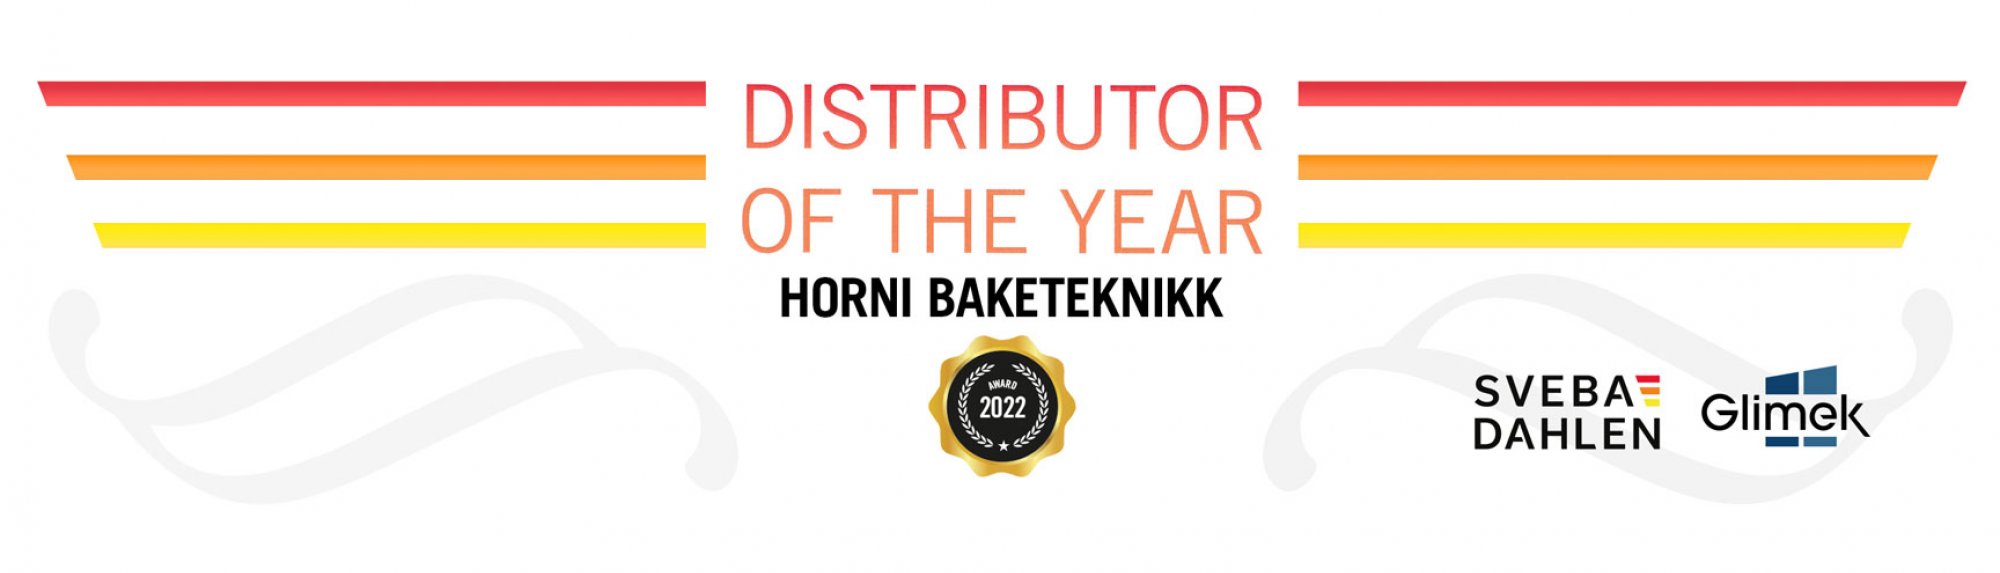 Horni Baketeknikk distributor of the year 2022 sveba dahlen glimek